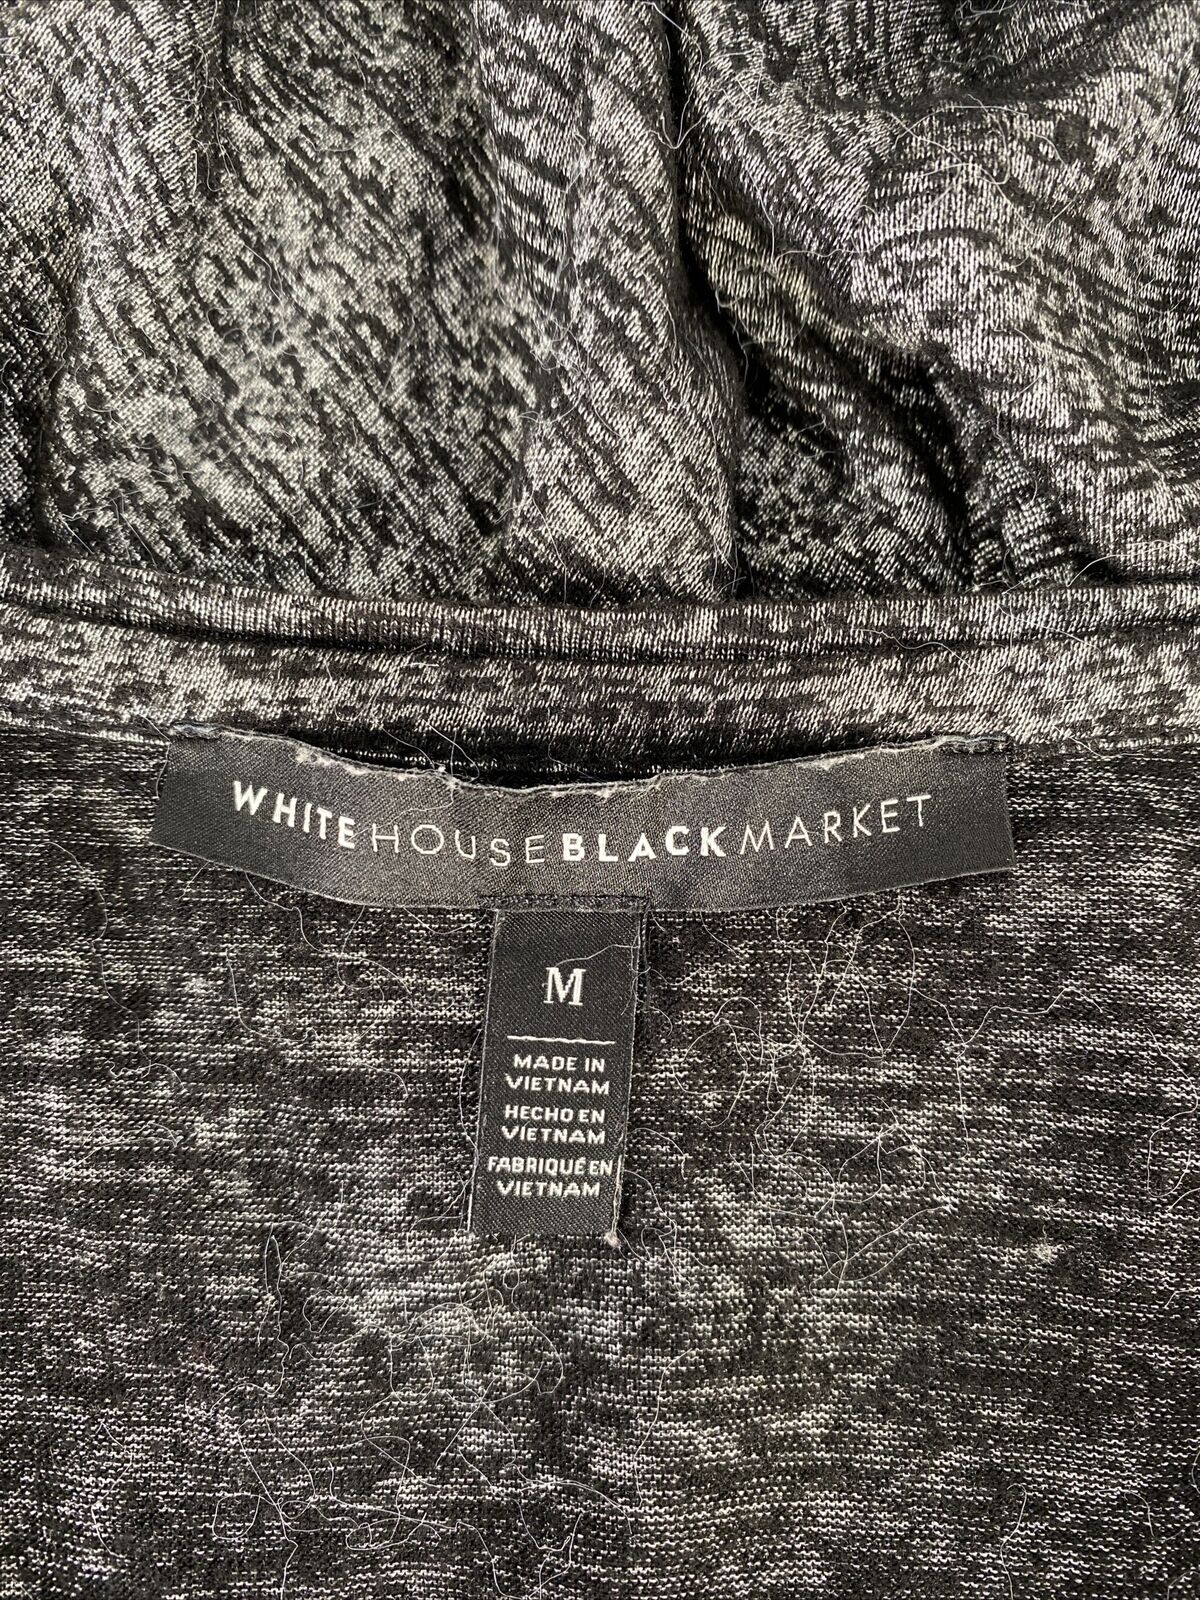 White House Black Market Women's Black Sleeveless V-Neck T-Shirt - M